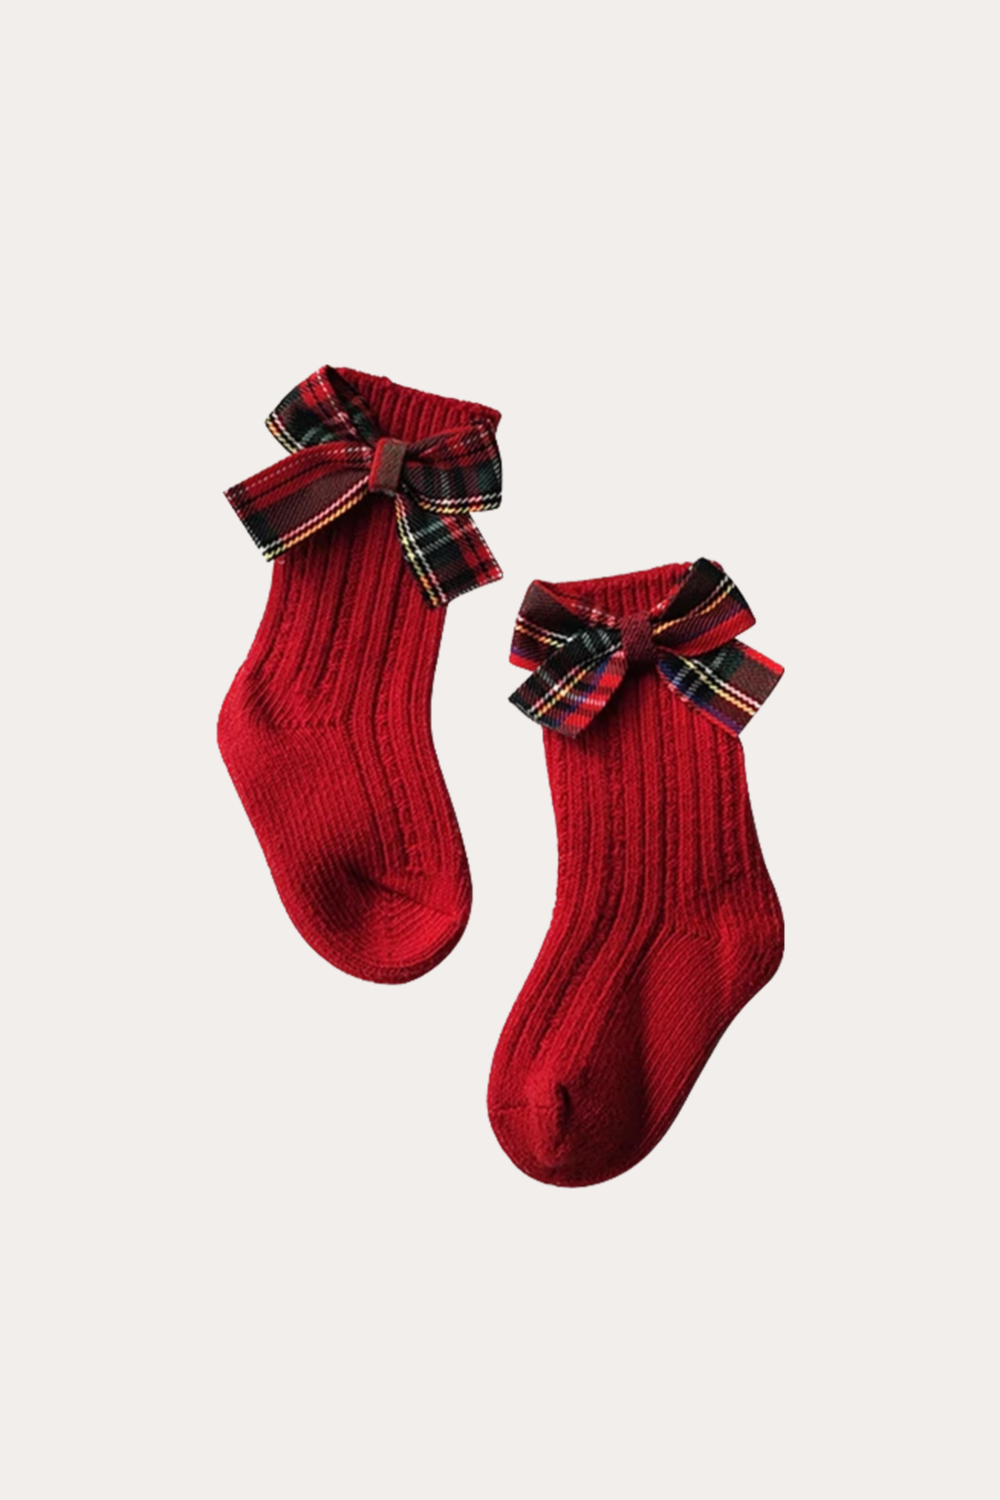 Calcetines navideños rojos | Corbata de moño